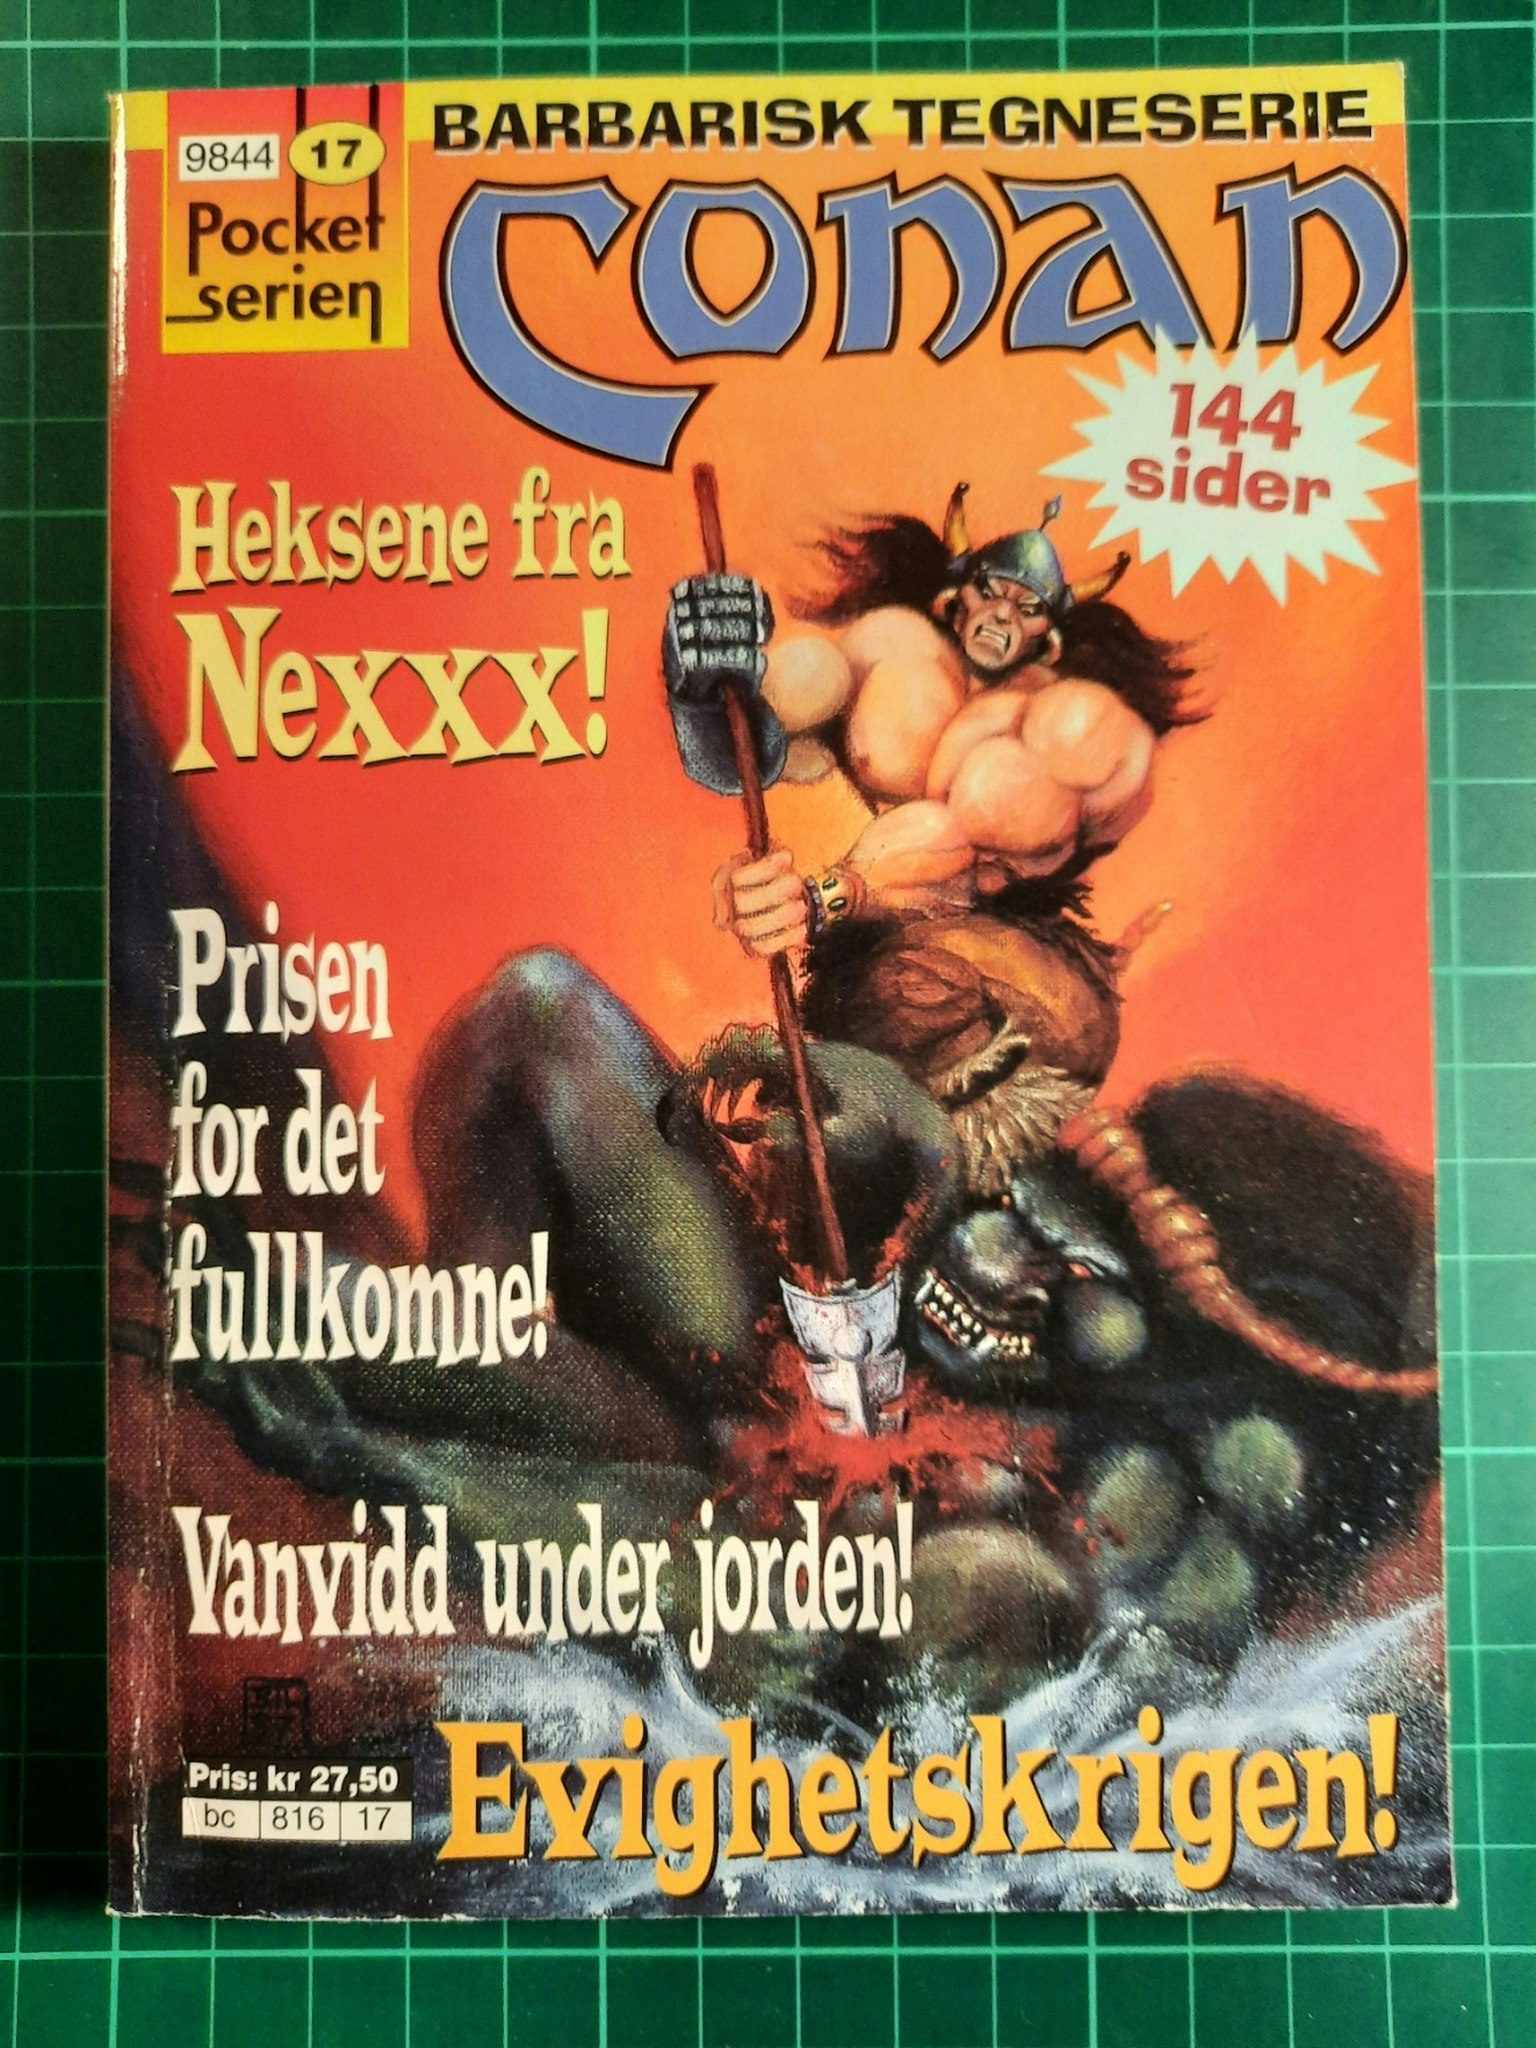 Pocket serien 17 : Conan